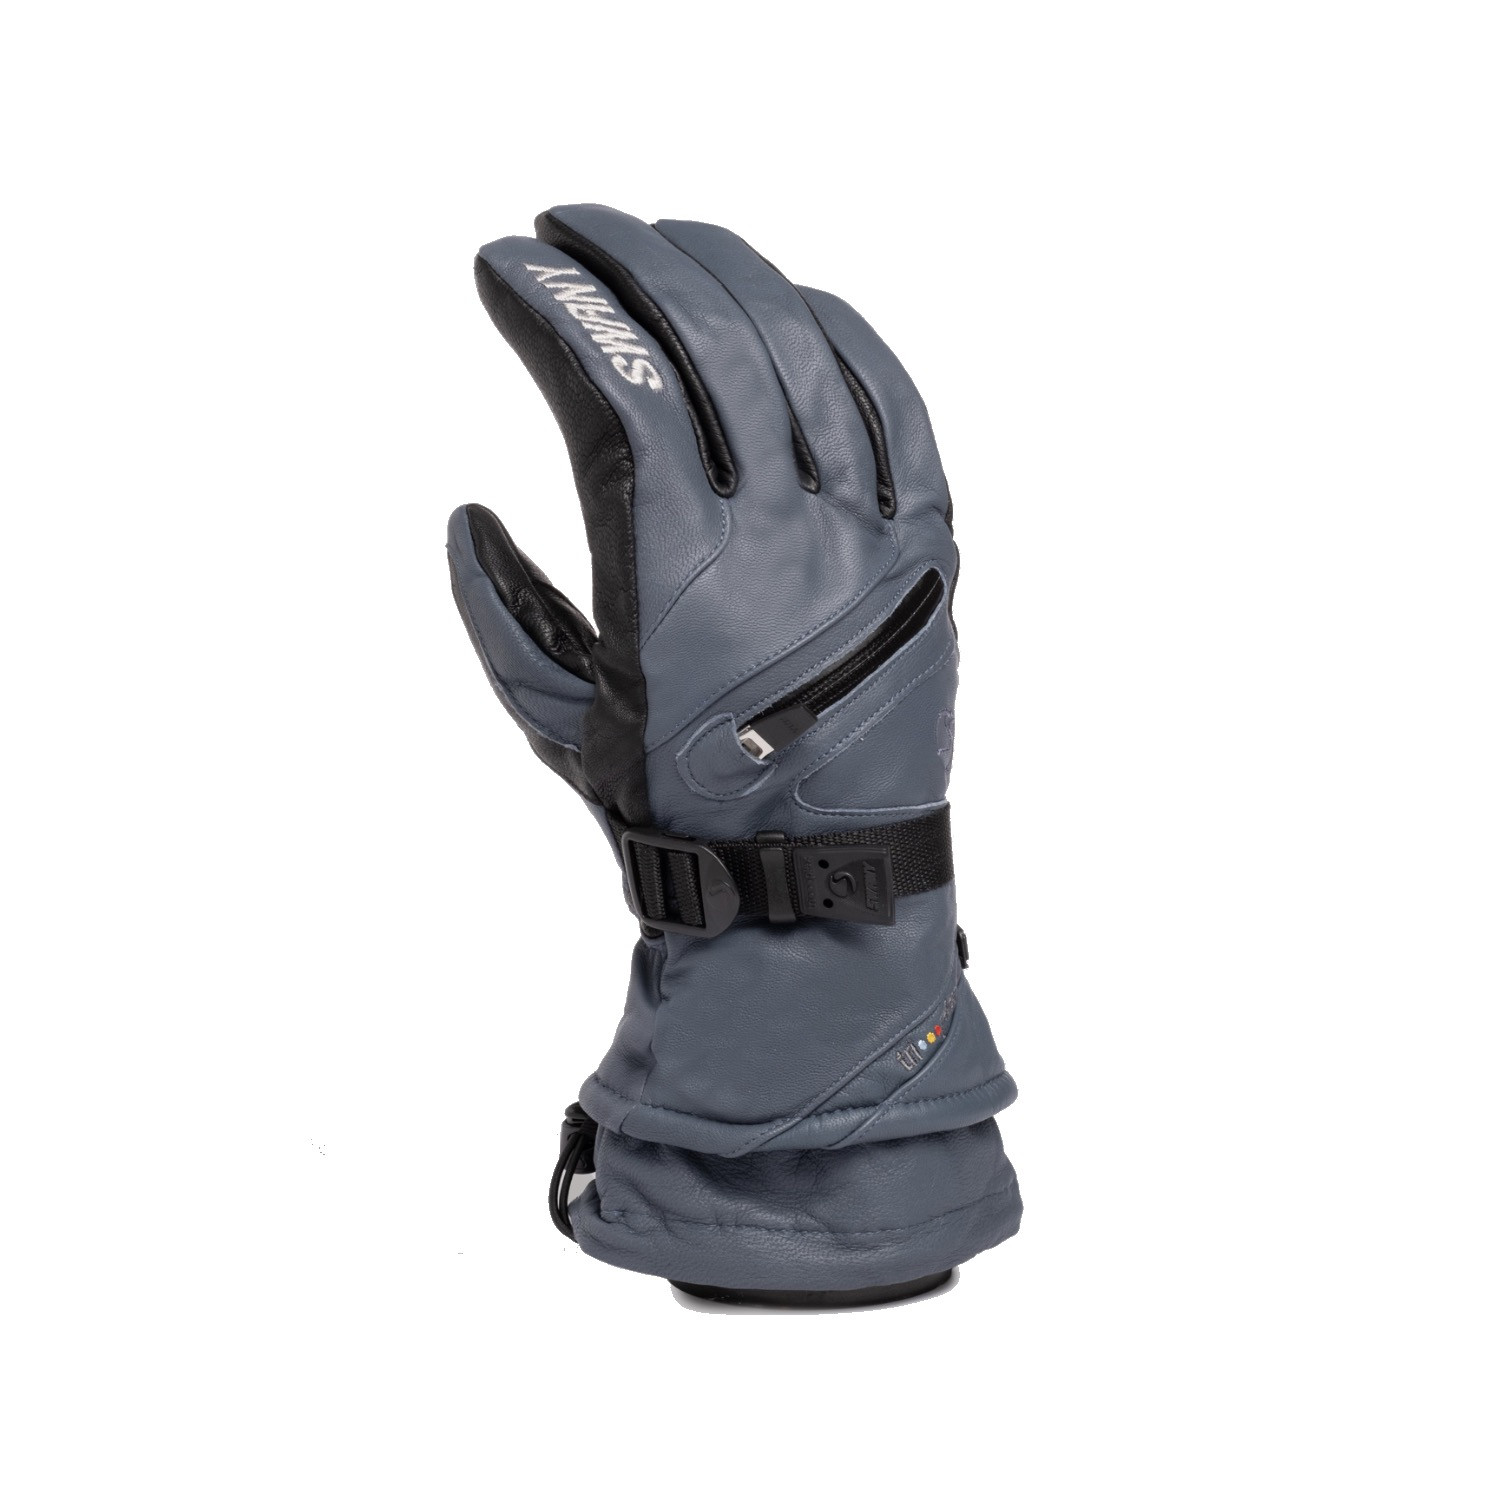 Gloves | The Ski Monster